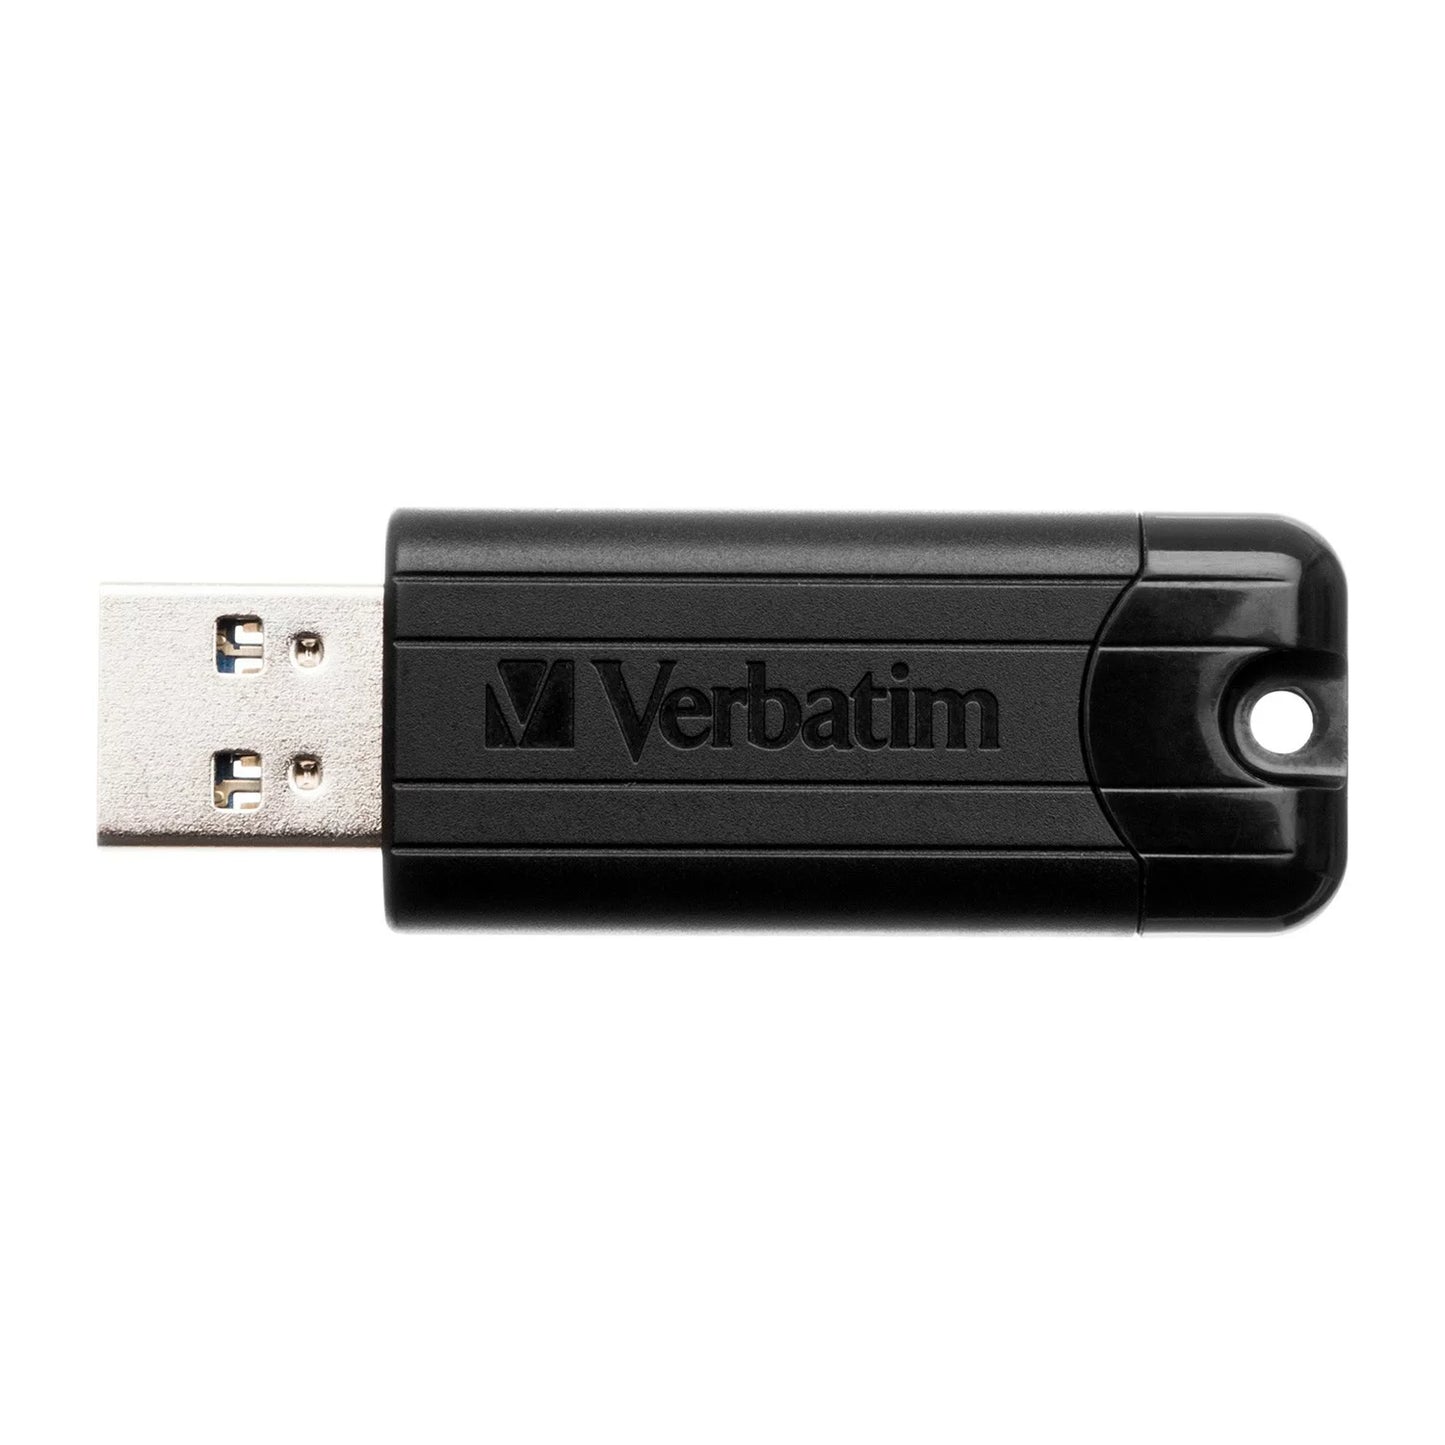 VERBATIM USB 32GB 3.0 V3 BLACK PIN STRIPE STORE N GO DRIVE